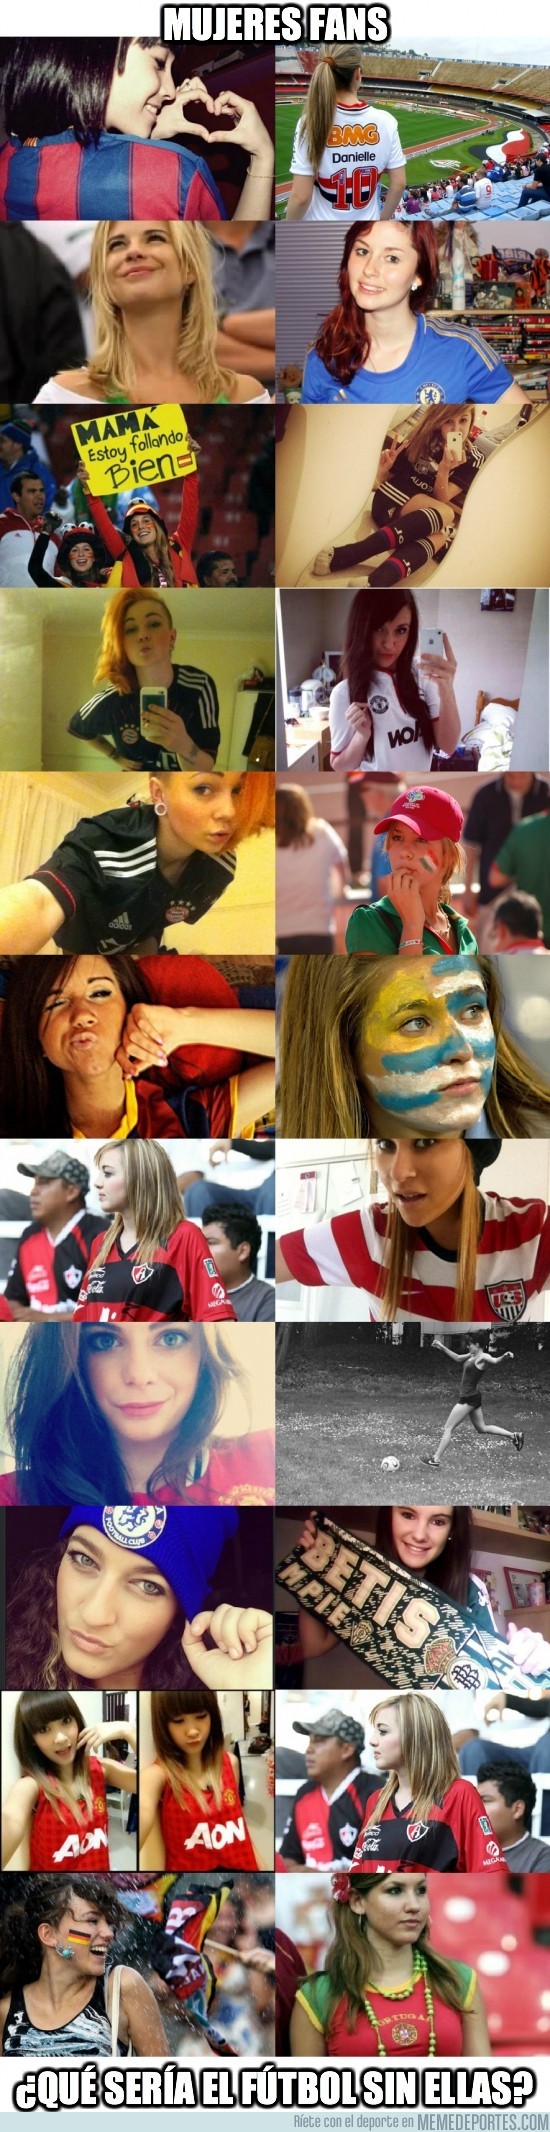 83073 - Mujeres fans, ¿qué sería el fútbol sin ellas?